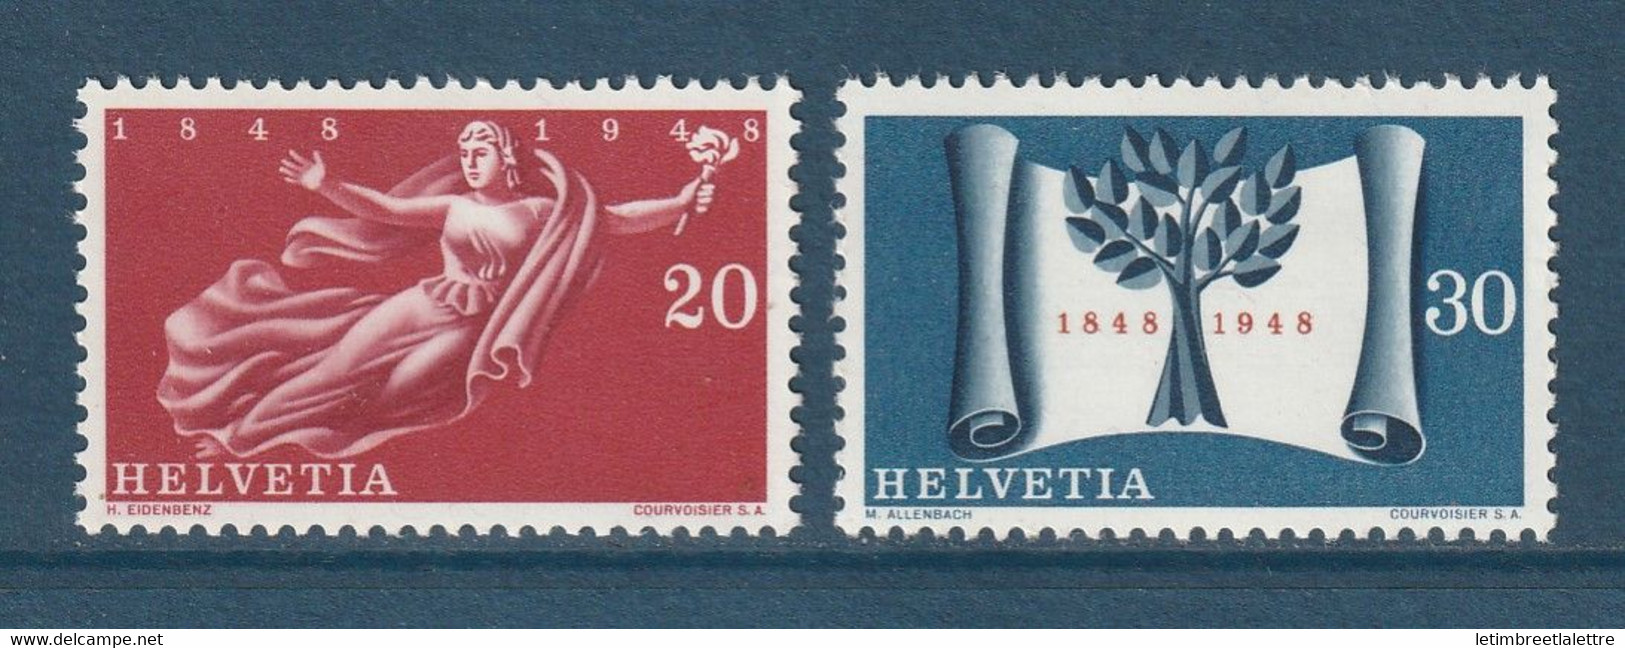 ⭐ Suisse - YT N° 455 Et 456 ** - Neuf Sans Charnière - 1948 ⭐ - Unused Stamps